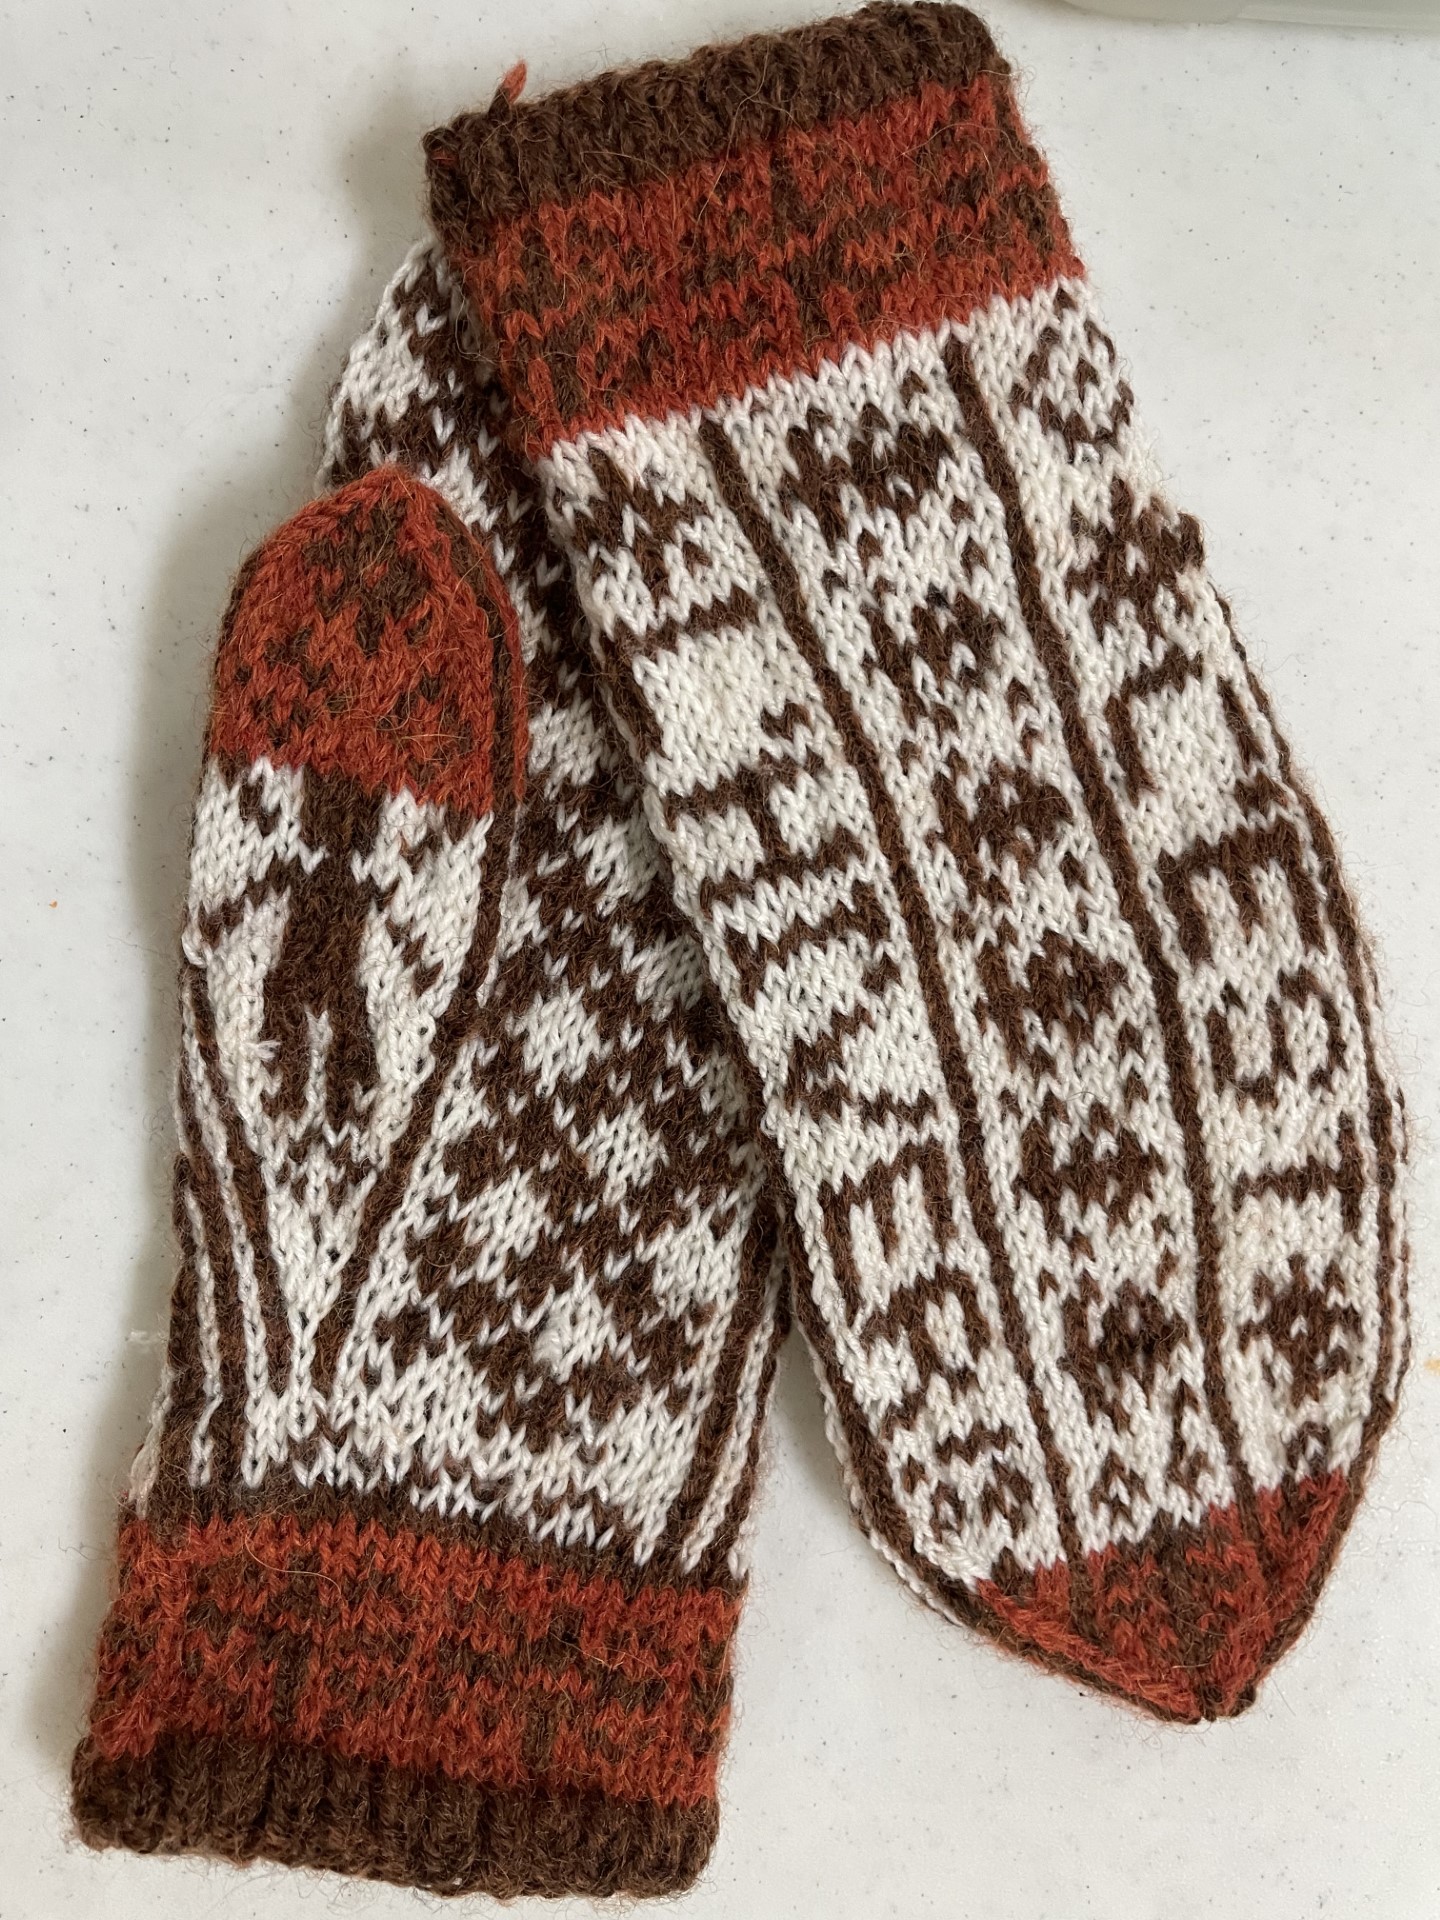 Des mitaines en tricot jacquard réalisées par Fleurette Bélanger, un fermière du Cercle de Laverlochère, présente lors du marché de Noël de Laverlochère, au Témiscamingue.